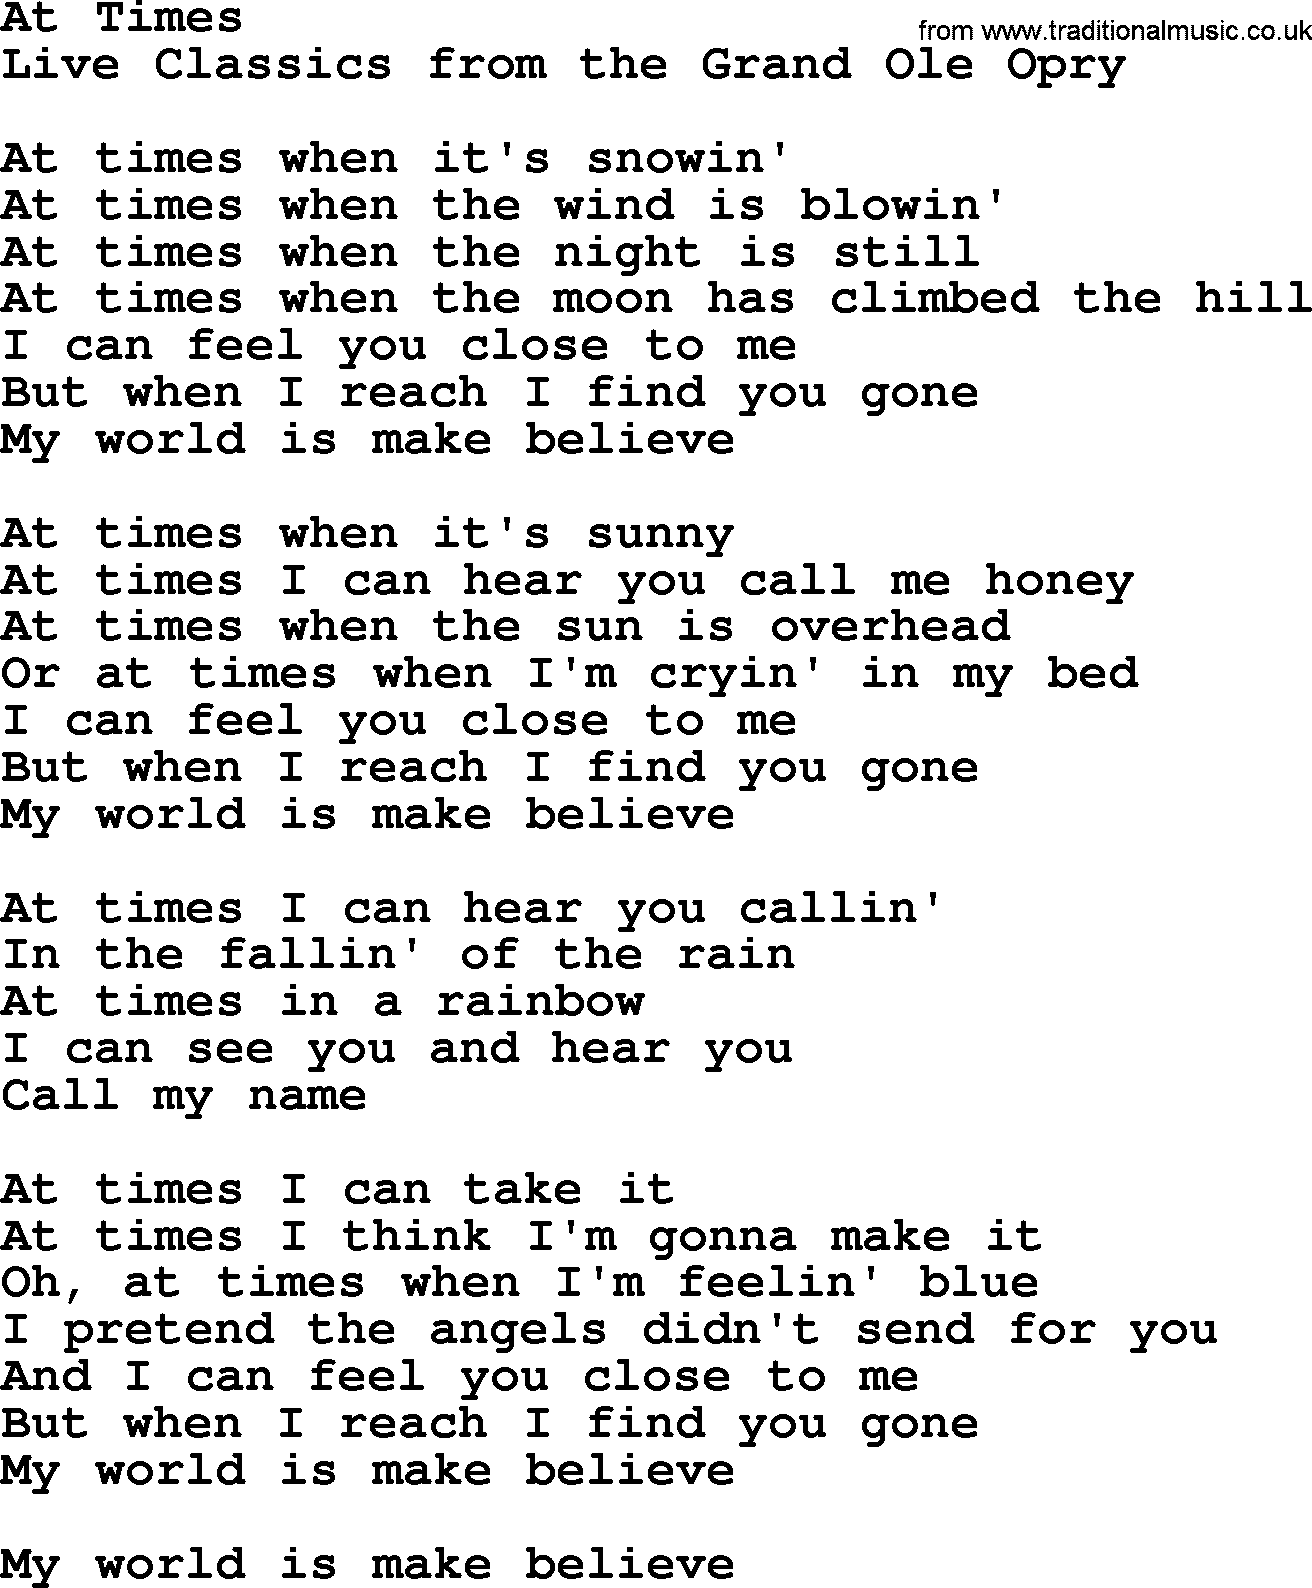 Marty Robbins song: At Times, lyrics